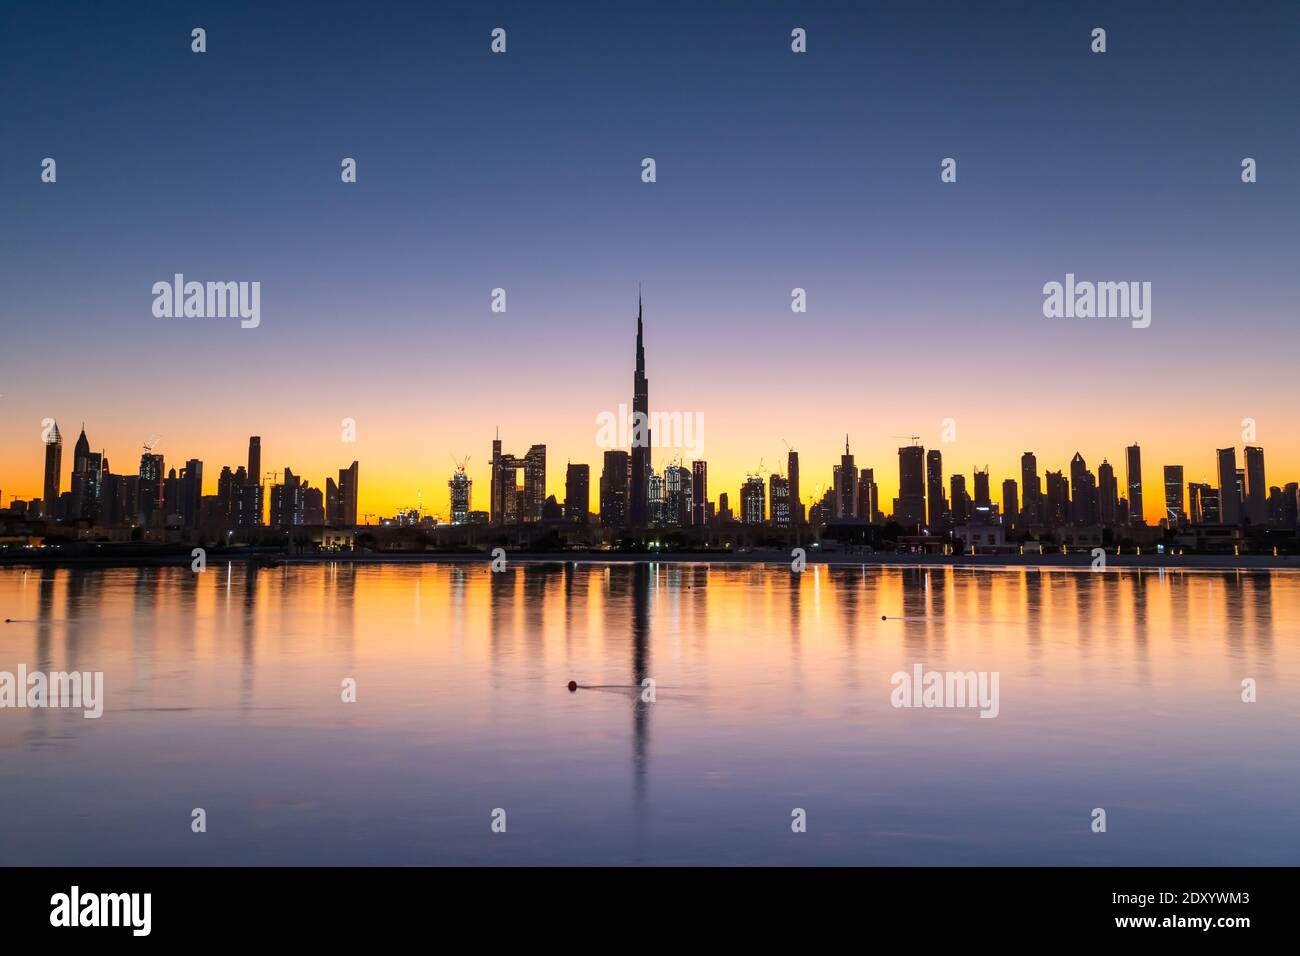 Sonnenaufgang in Dubai mit klarem blauen Himmel Blick vom Boot oder Meer. Morgens geht die Sonne über den Wolkenkratzern der VAE auf. Dubai Strand, Küste, Ufer Stockfoto